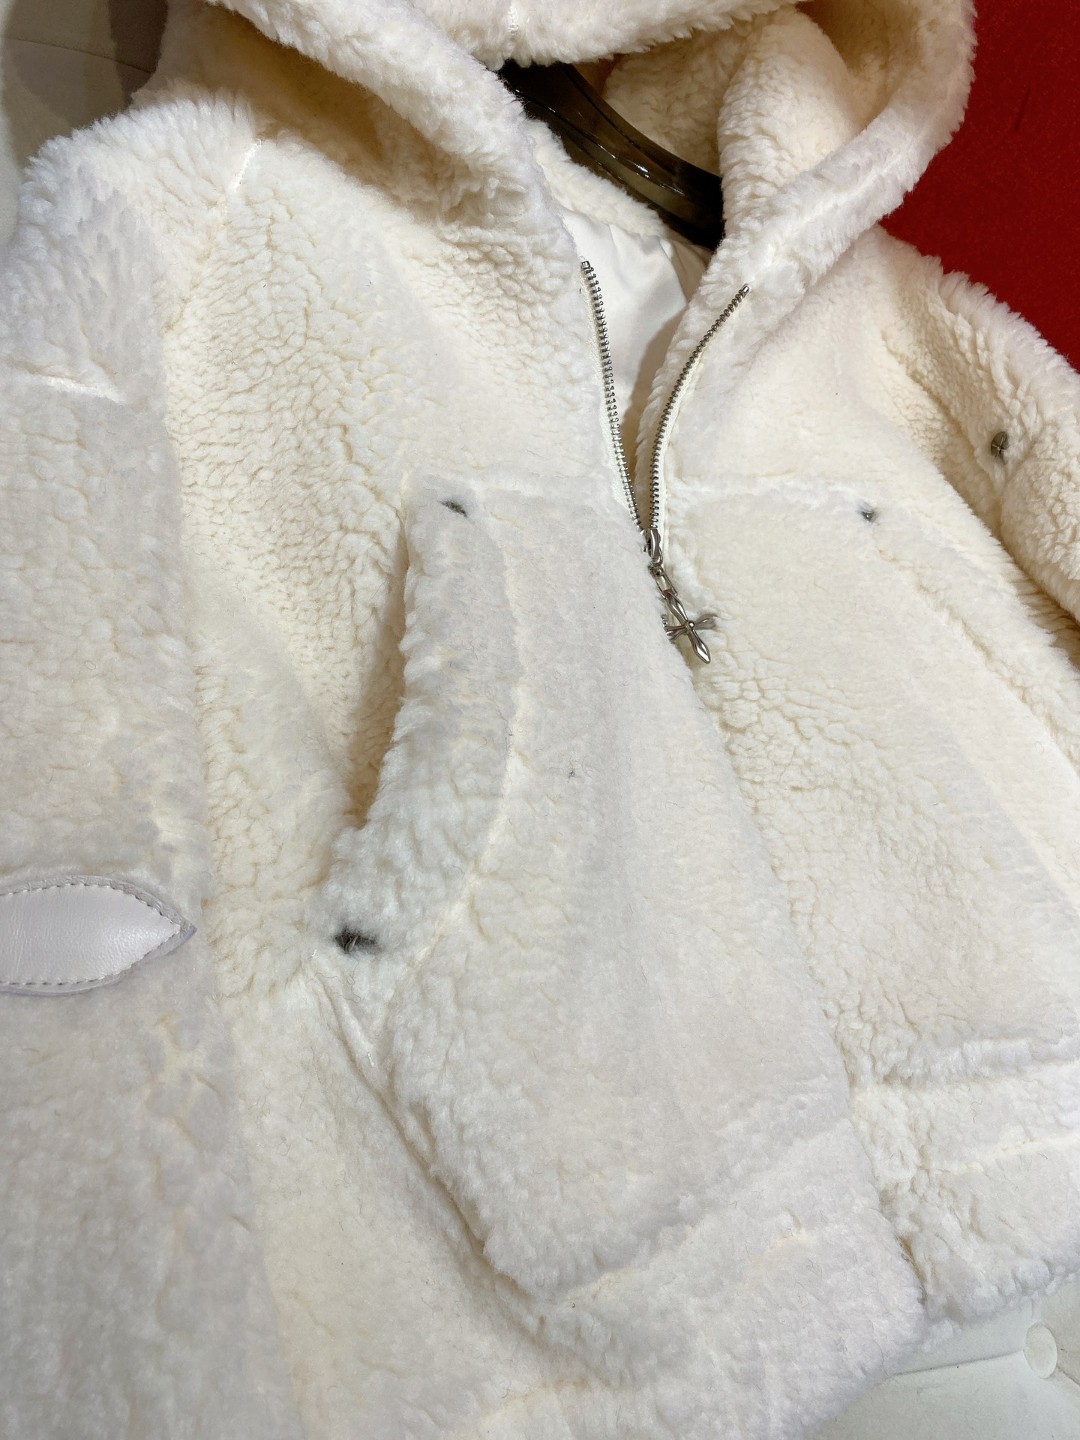 SMFKジャケットモコモコスーパーコピー 秋冬服 暖かい 人気品 柔らかい レディース もこもこ 高級 ホワイト_6